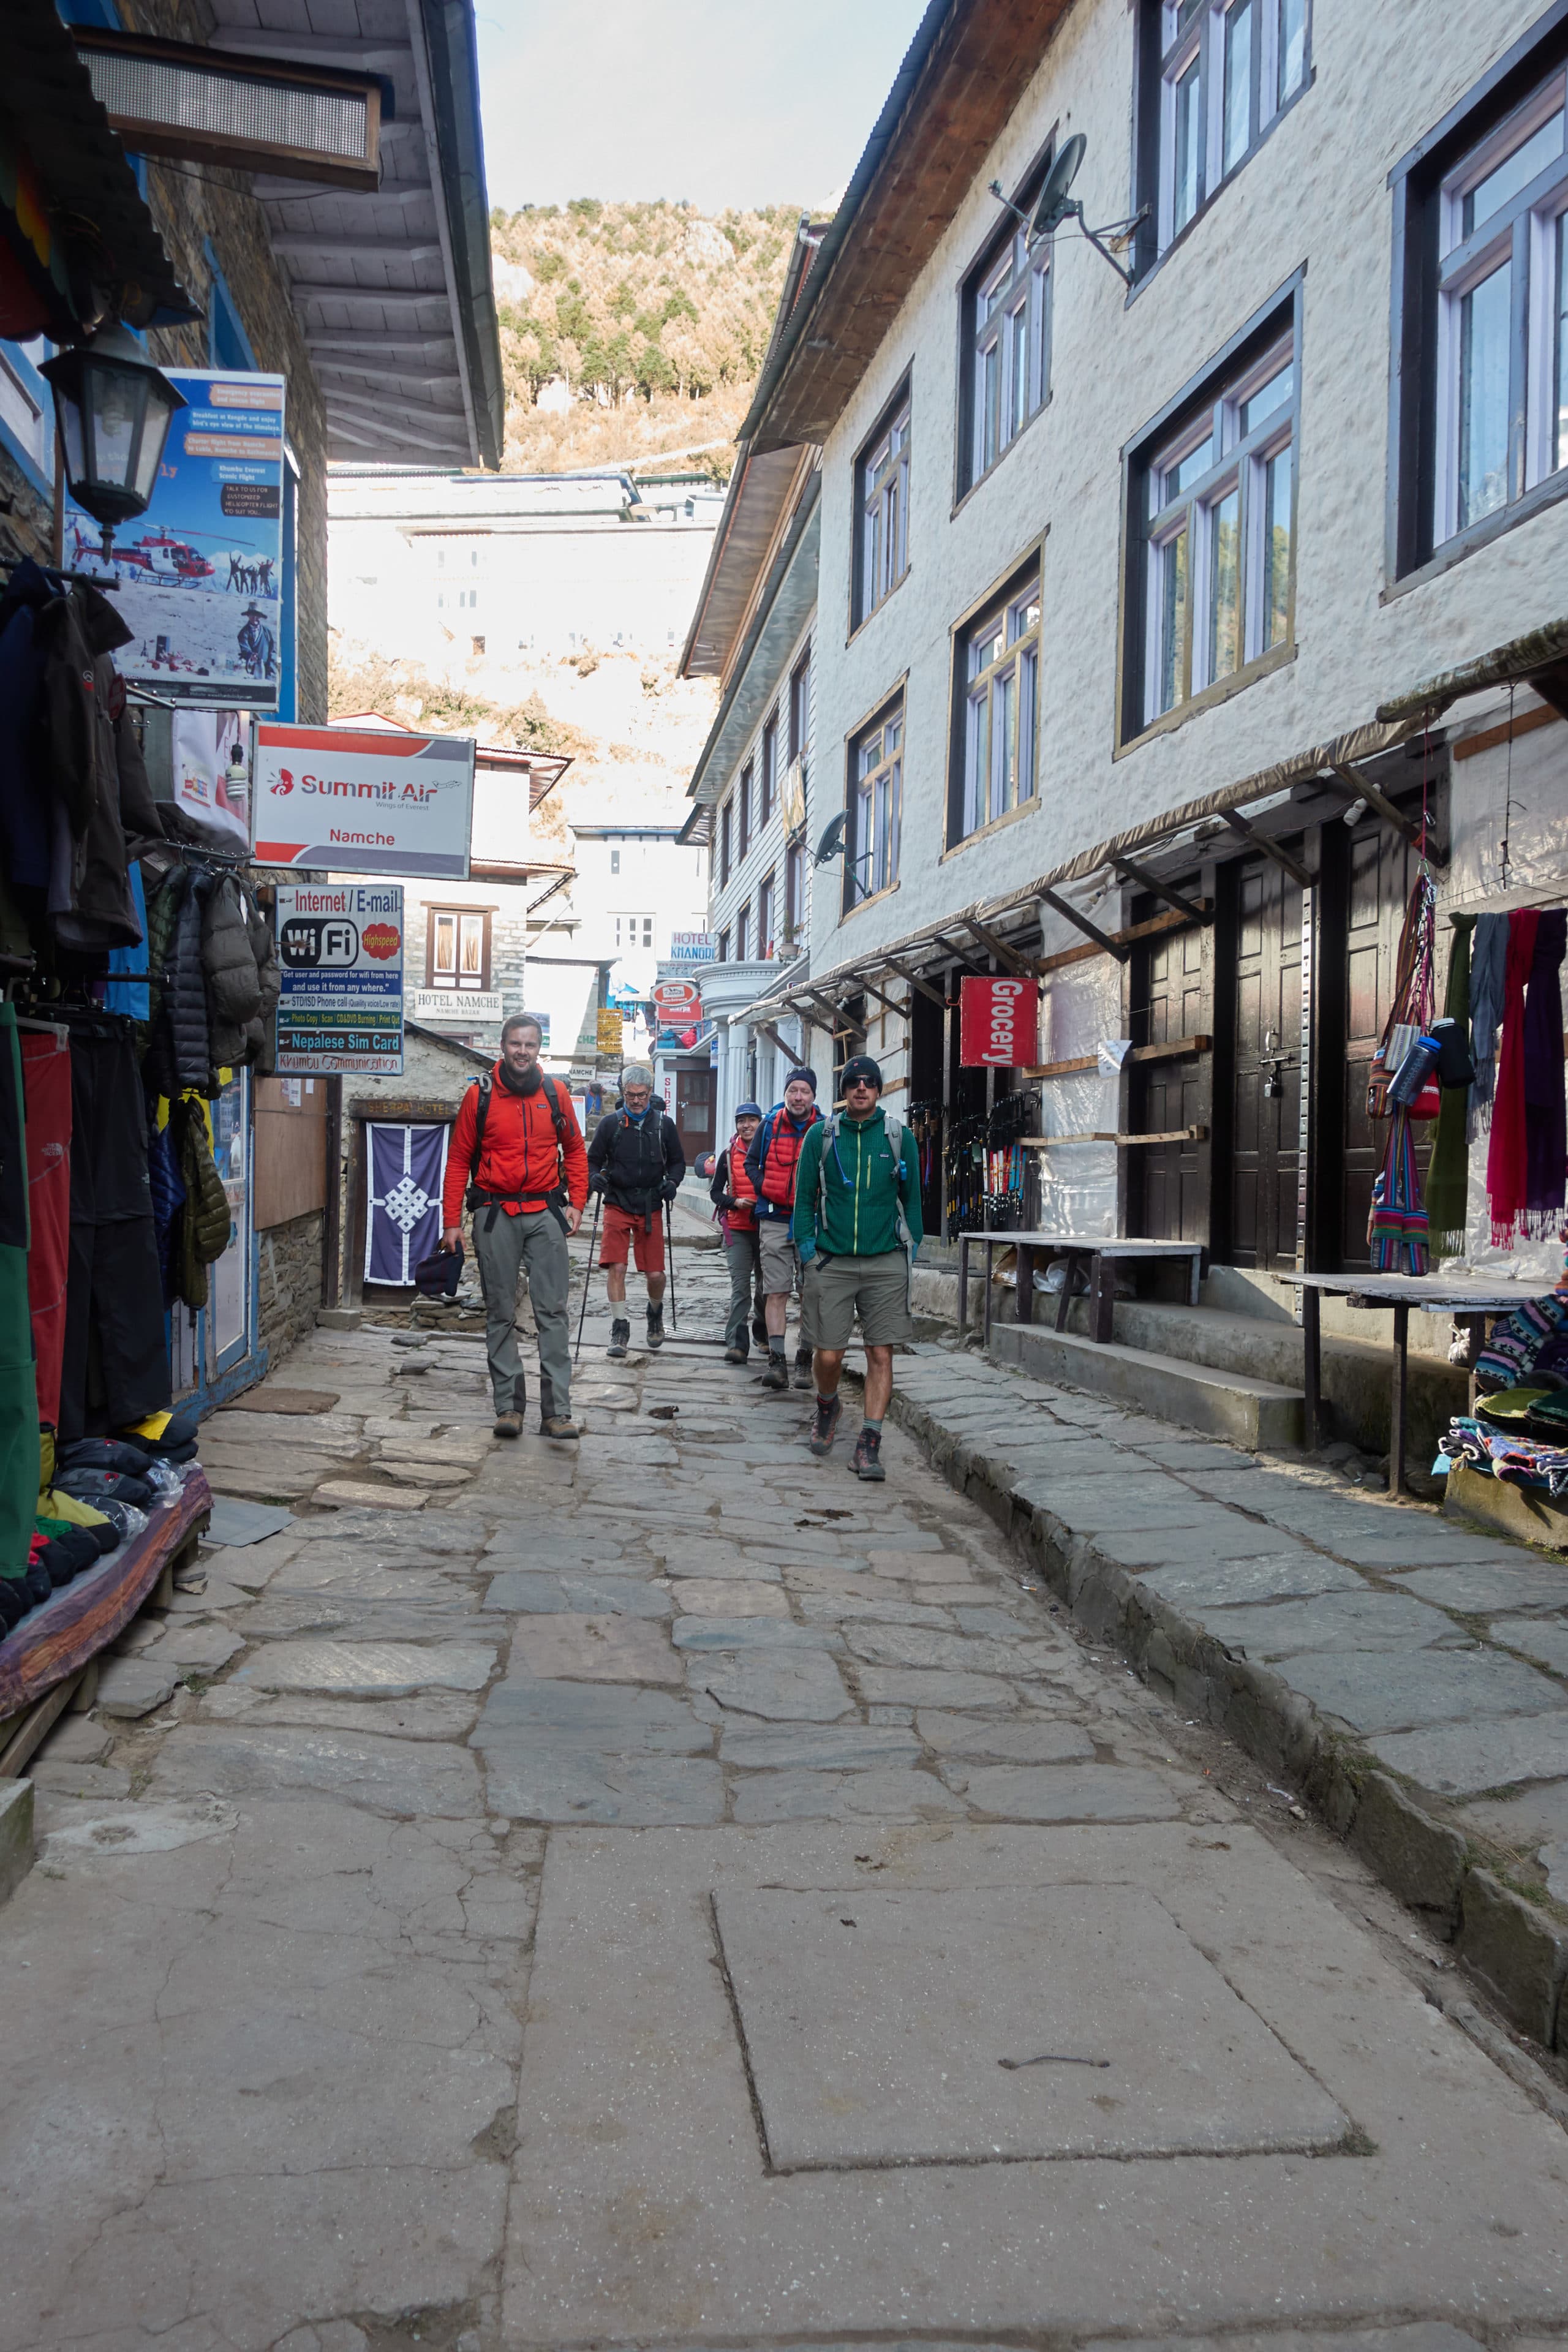 The streets of Namche Bazaar